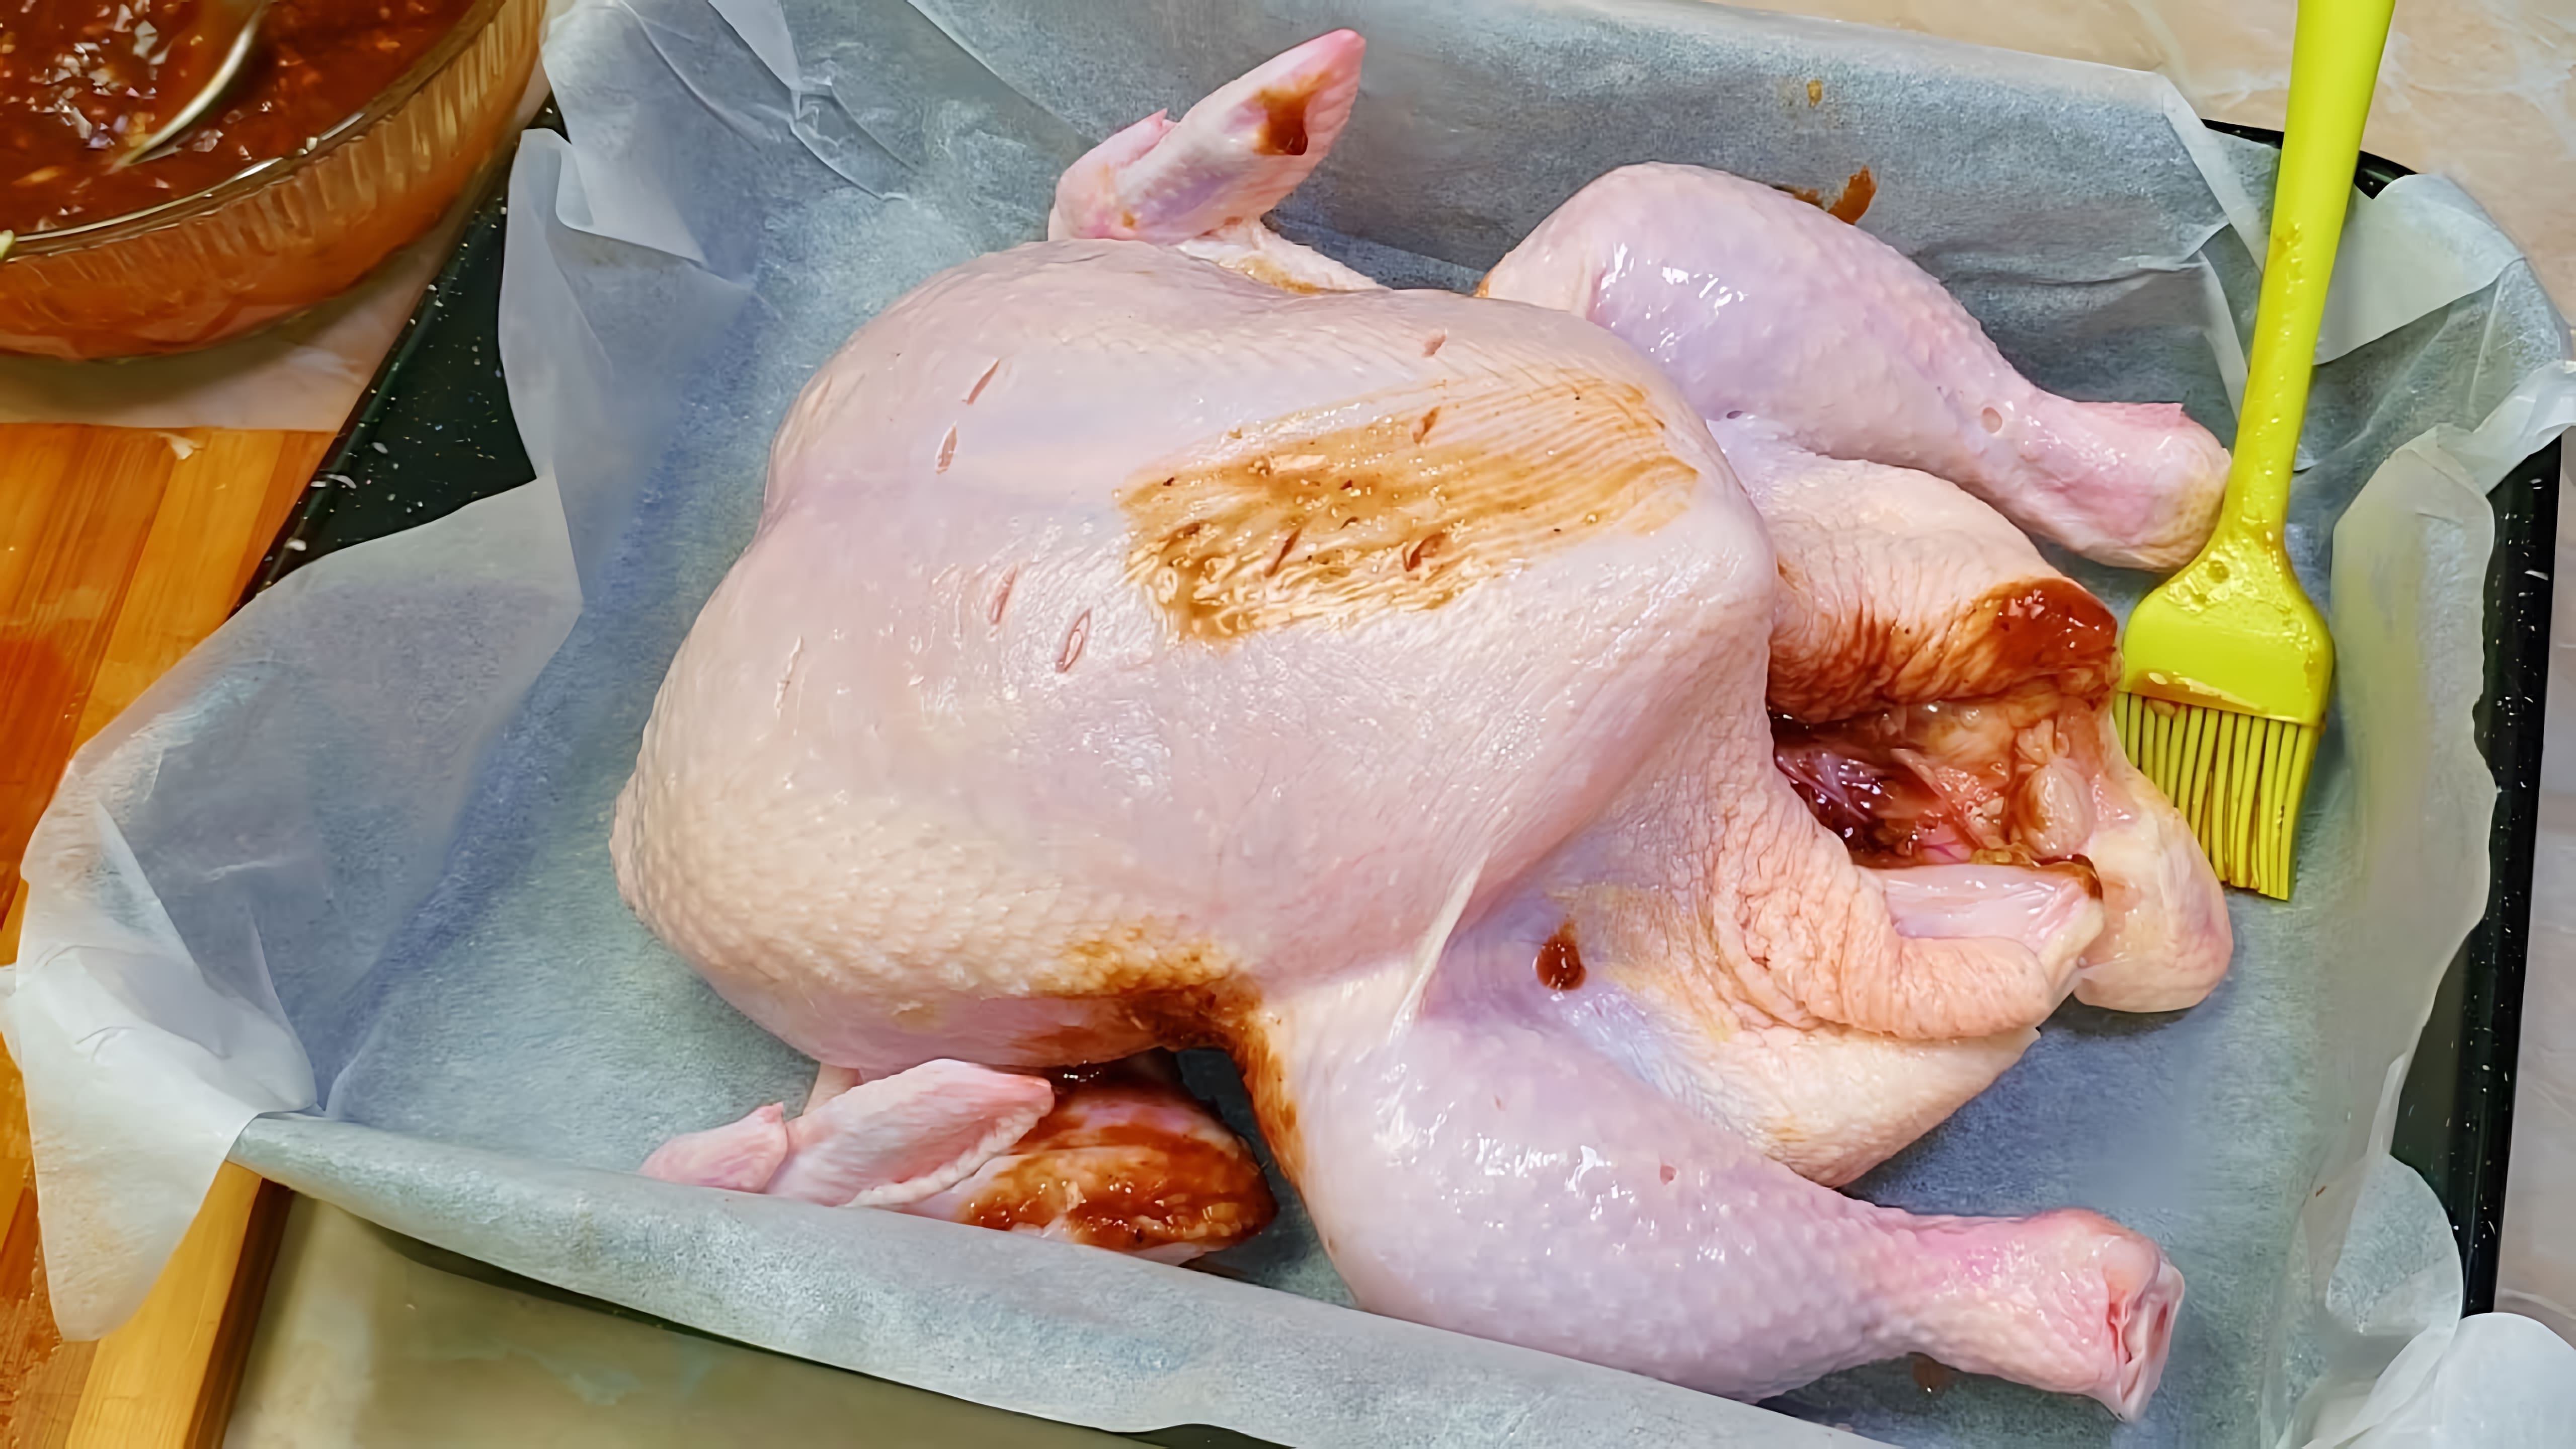 В этом видео демонстрируется процесс приготовления курицы гриль без использования гриля